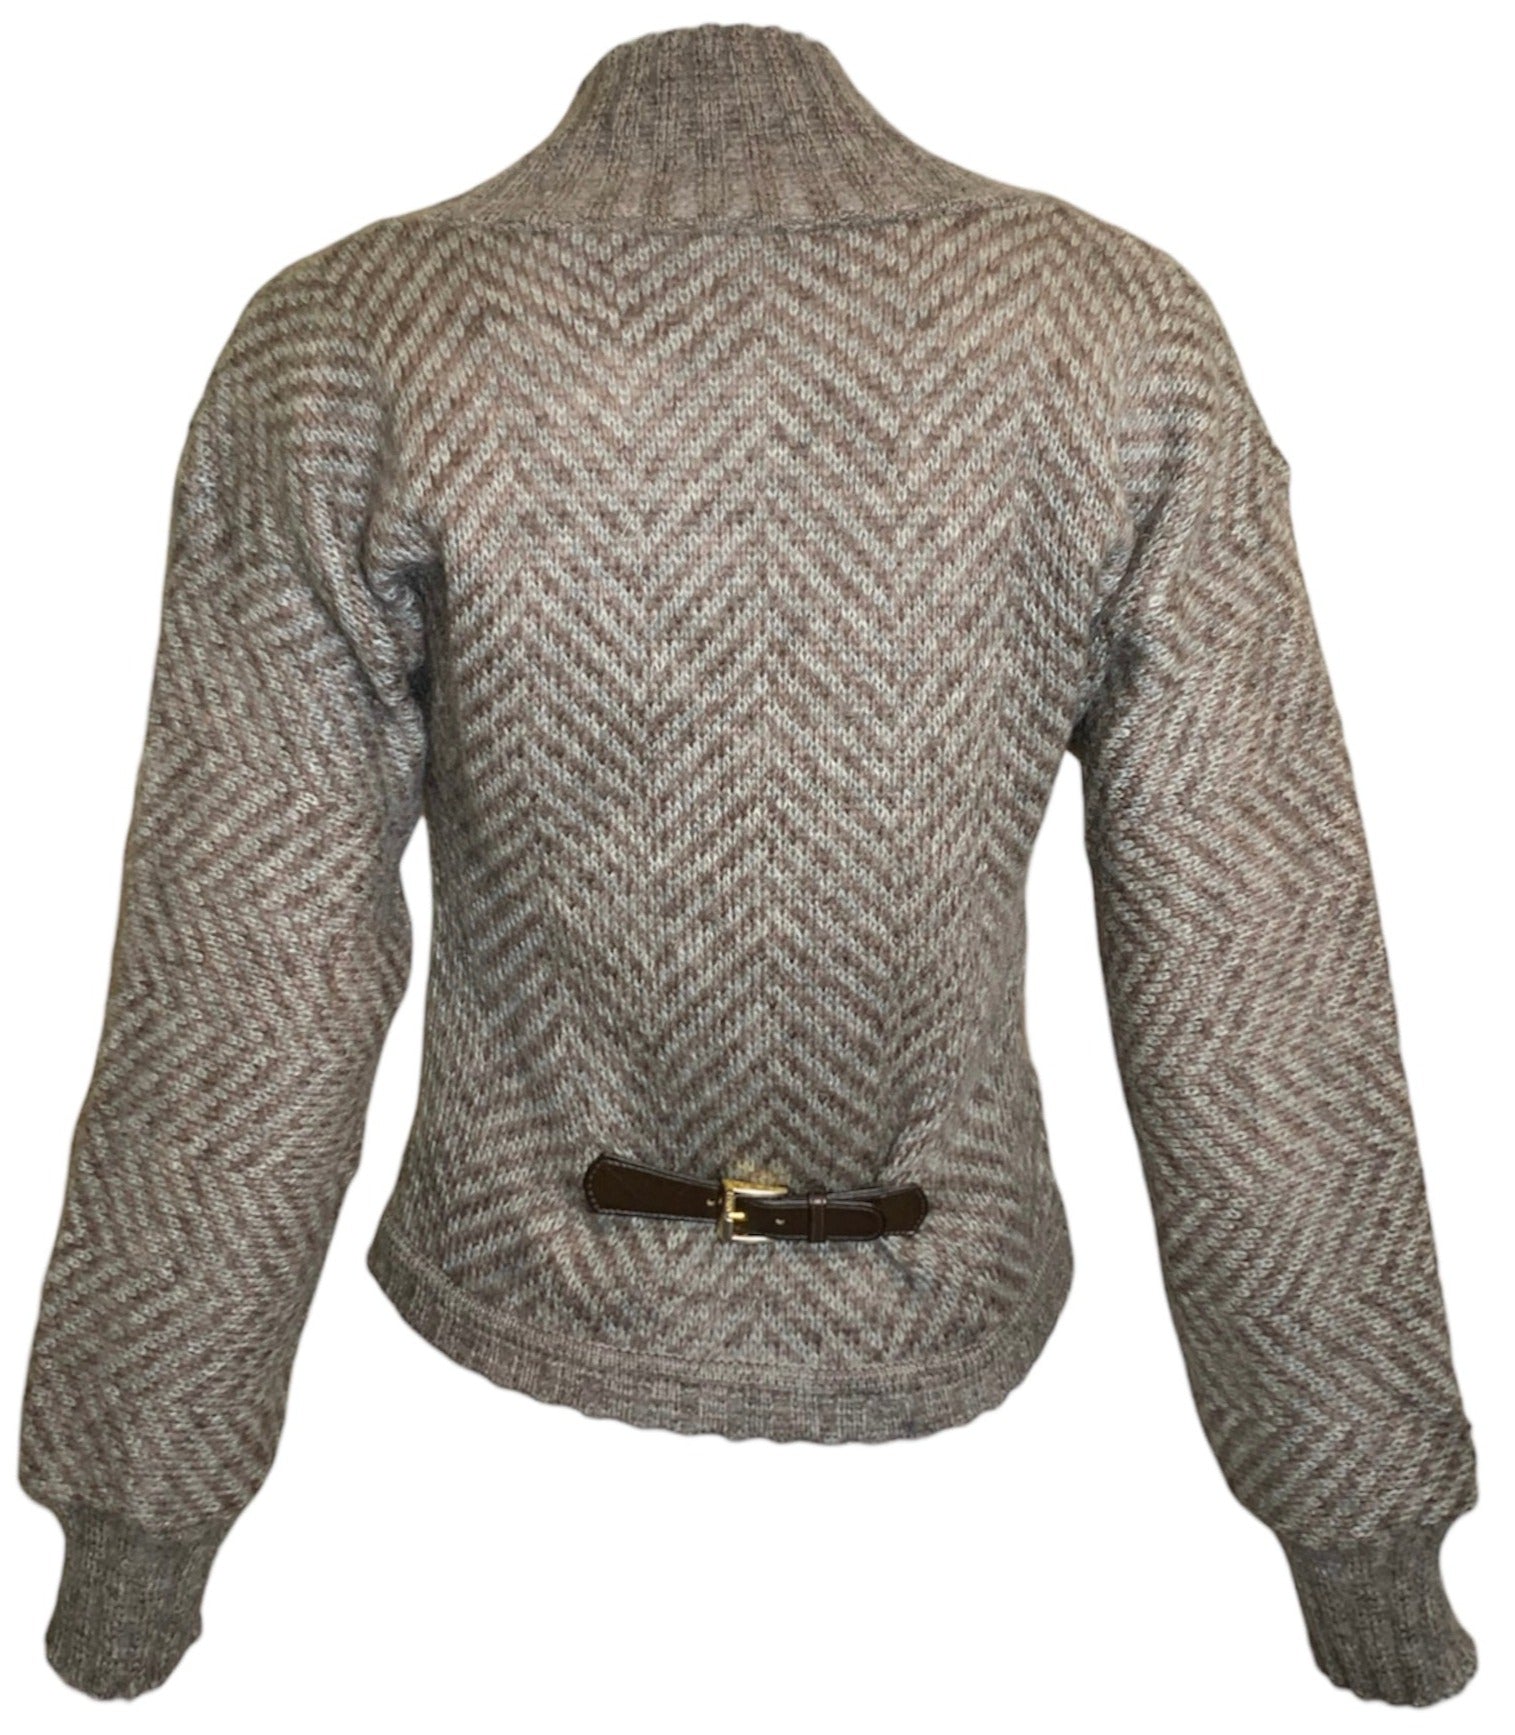  Gucci '70s Grey & Brown Chevron Alpaca Cashmere Sweater BACK 3 of 6